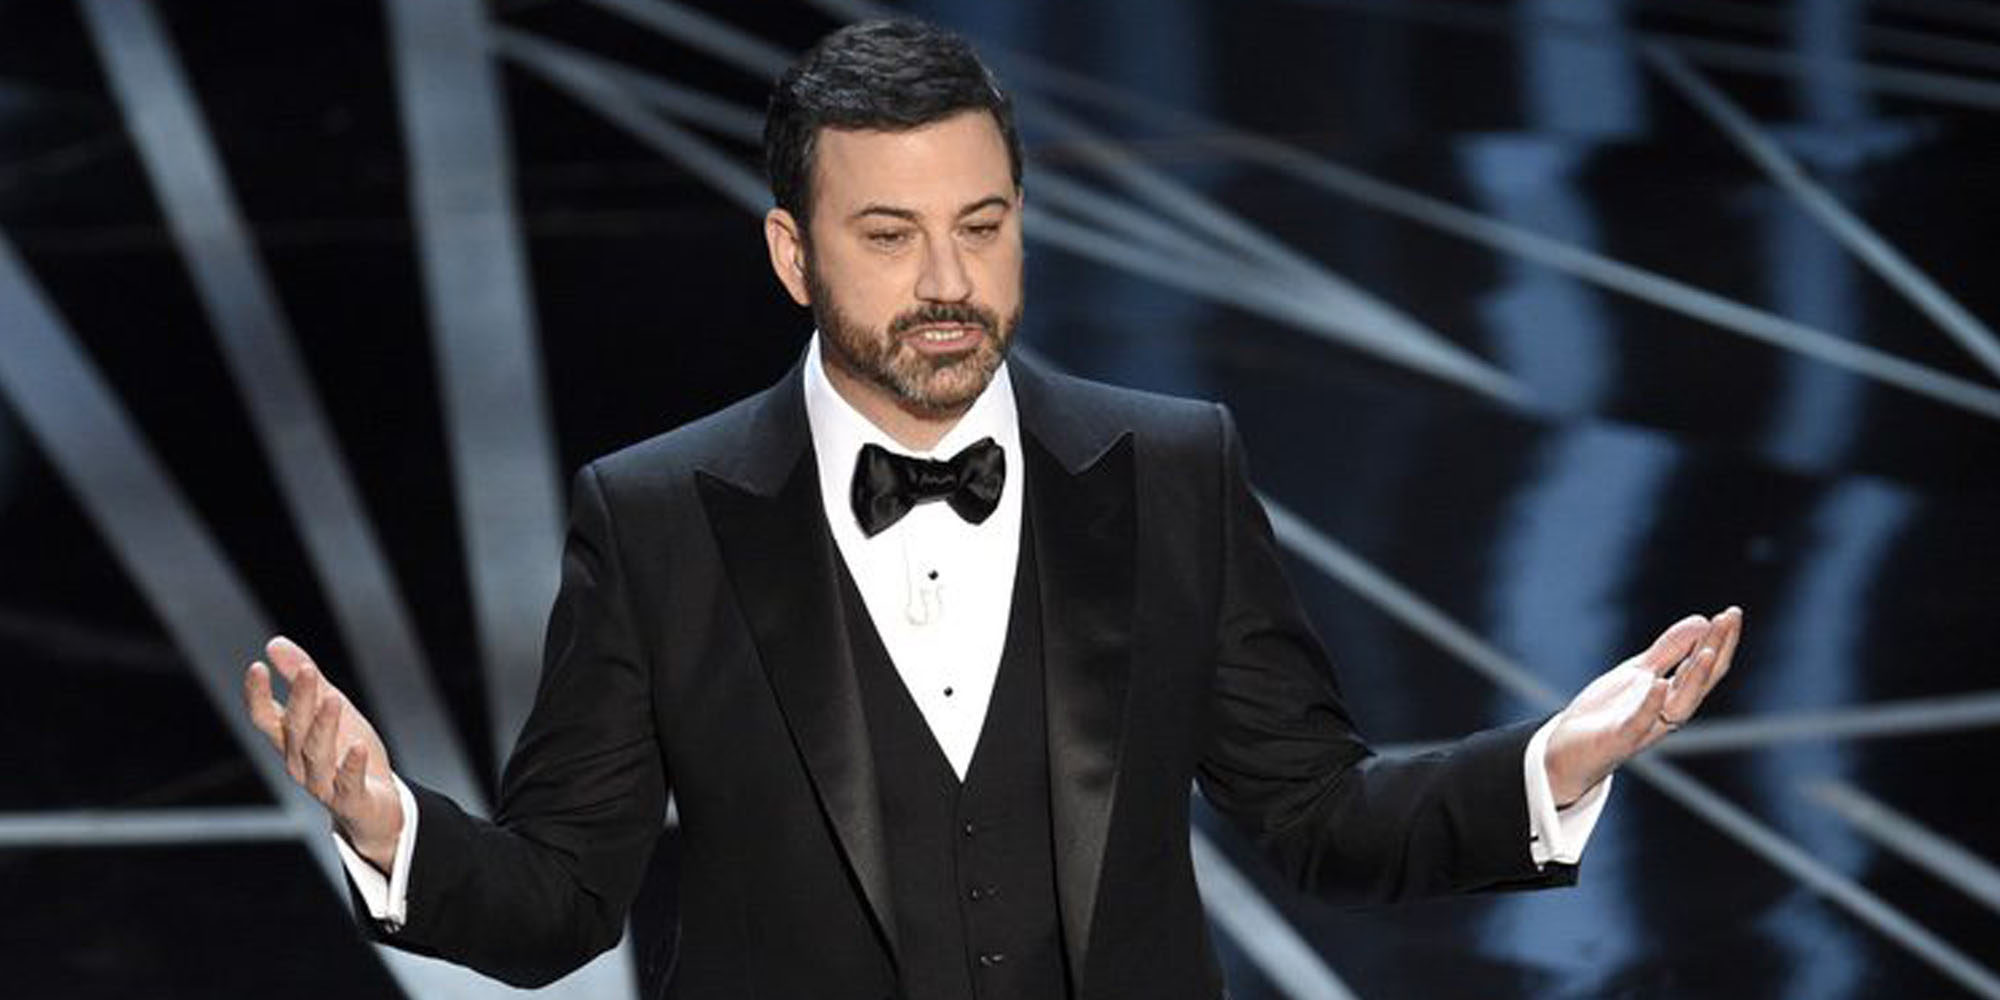 Jimmy Kimmel habla de la enfermedad de su hijo: "Está mejor y parece ser fuerte"